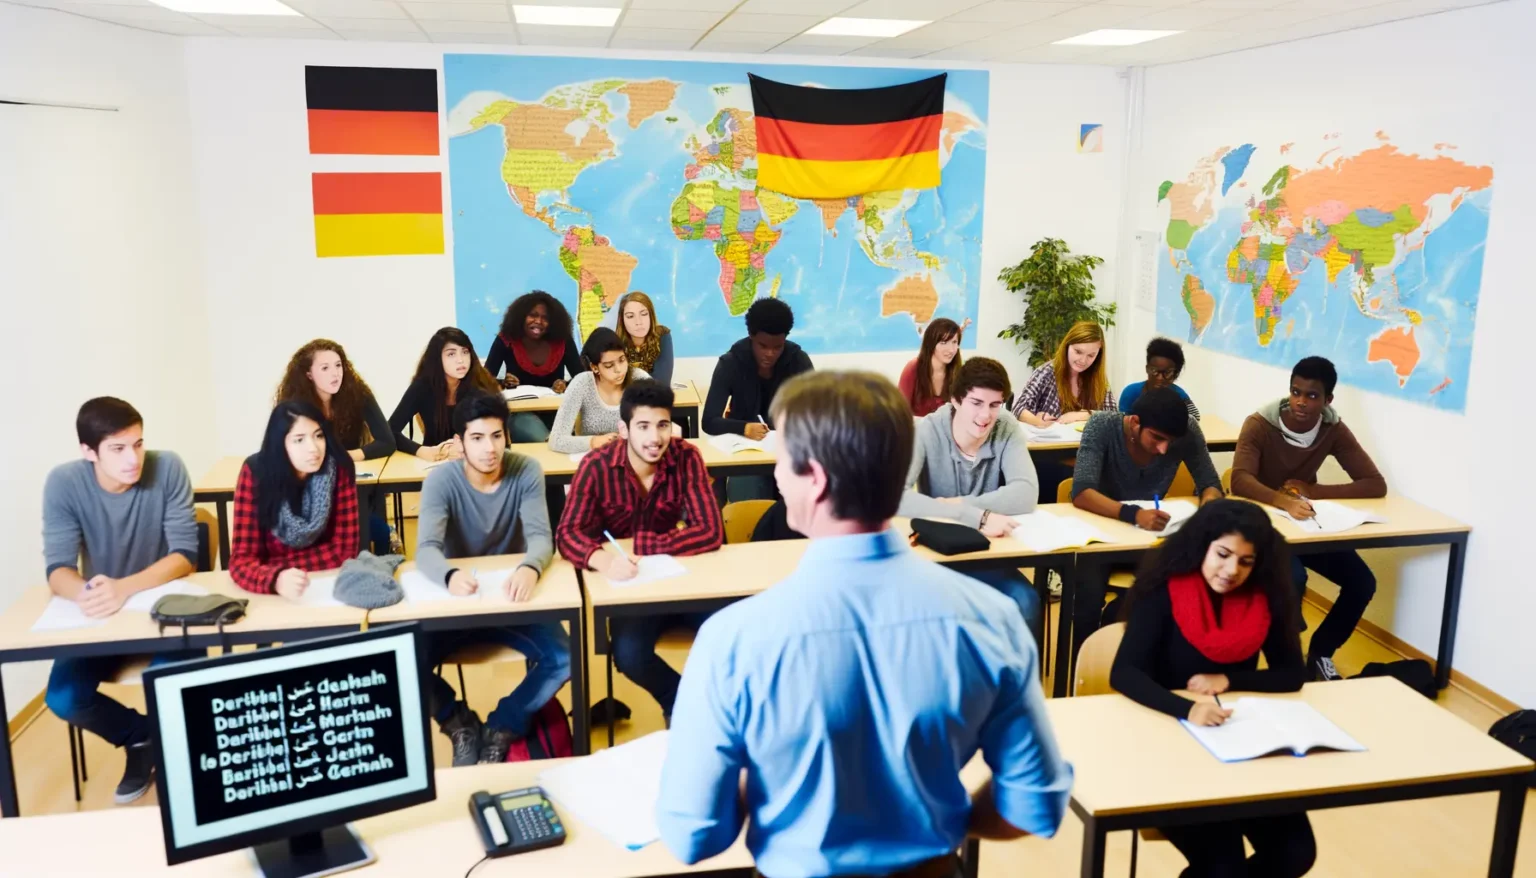 Eine Gruppe diverser Studenten sitzt in einem Klassenzimmer und schaut auf einen Lehrer, der im Vordergrund steht. Im Hintergrund hängt eine Weltkarte an der Wand zwischen zwei deutschen Flaggen. Auf dem Monitor im Vordergrund ist eine Präsentation mit deutschen Texten, die vermutlich zum Unterricht gehört.